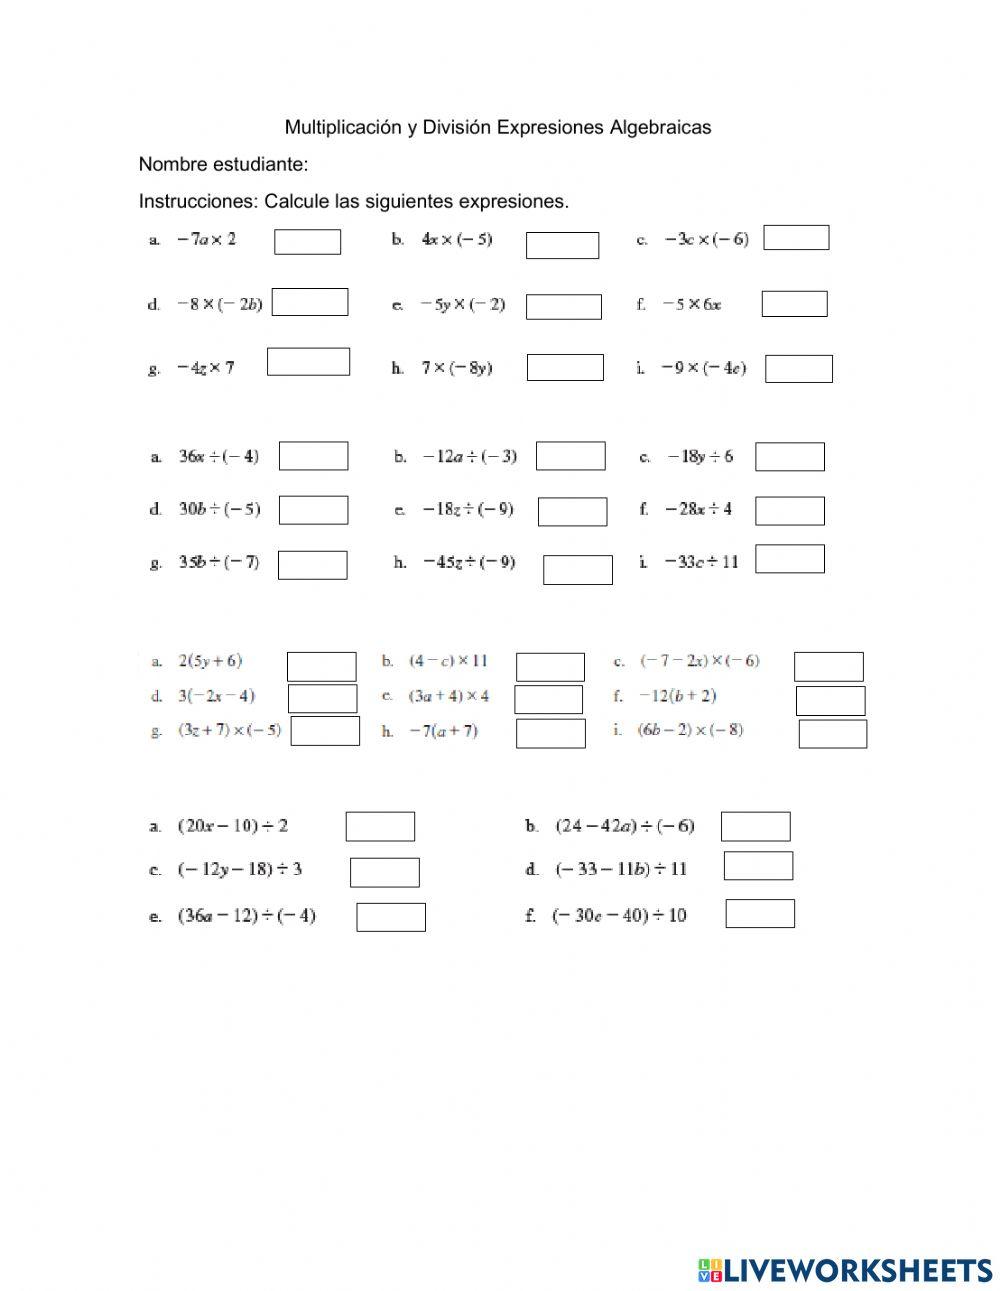 Multiplicación y División de Expresiones Algebraicas